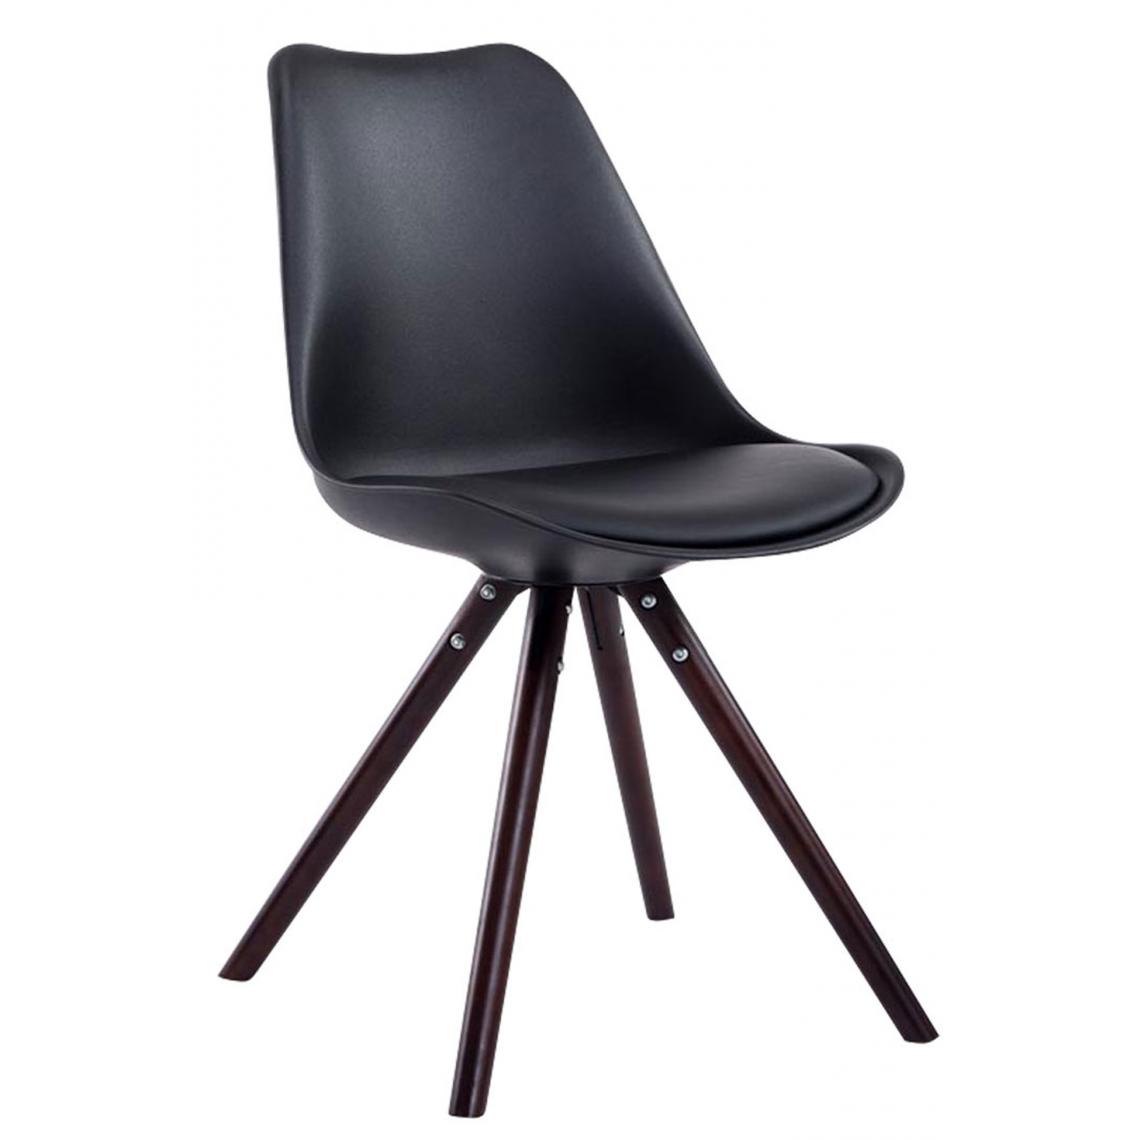 Icaverne - Splendide Chaise visiteur collection Katmandou cuir synthétique rond cappuccino (chêne) couleur noir - Chaises